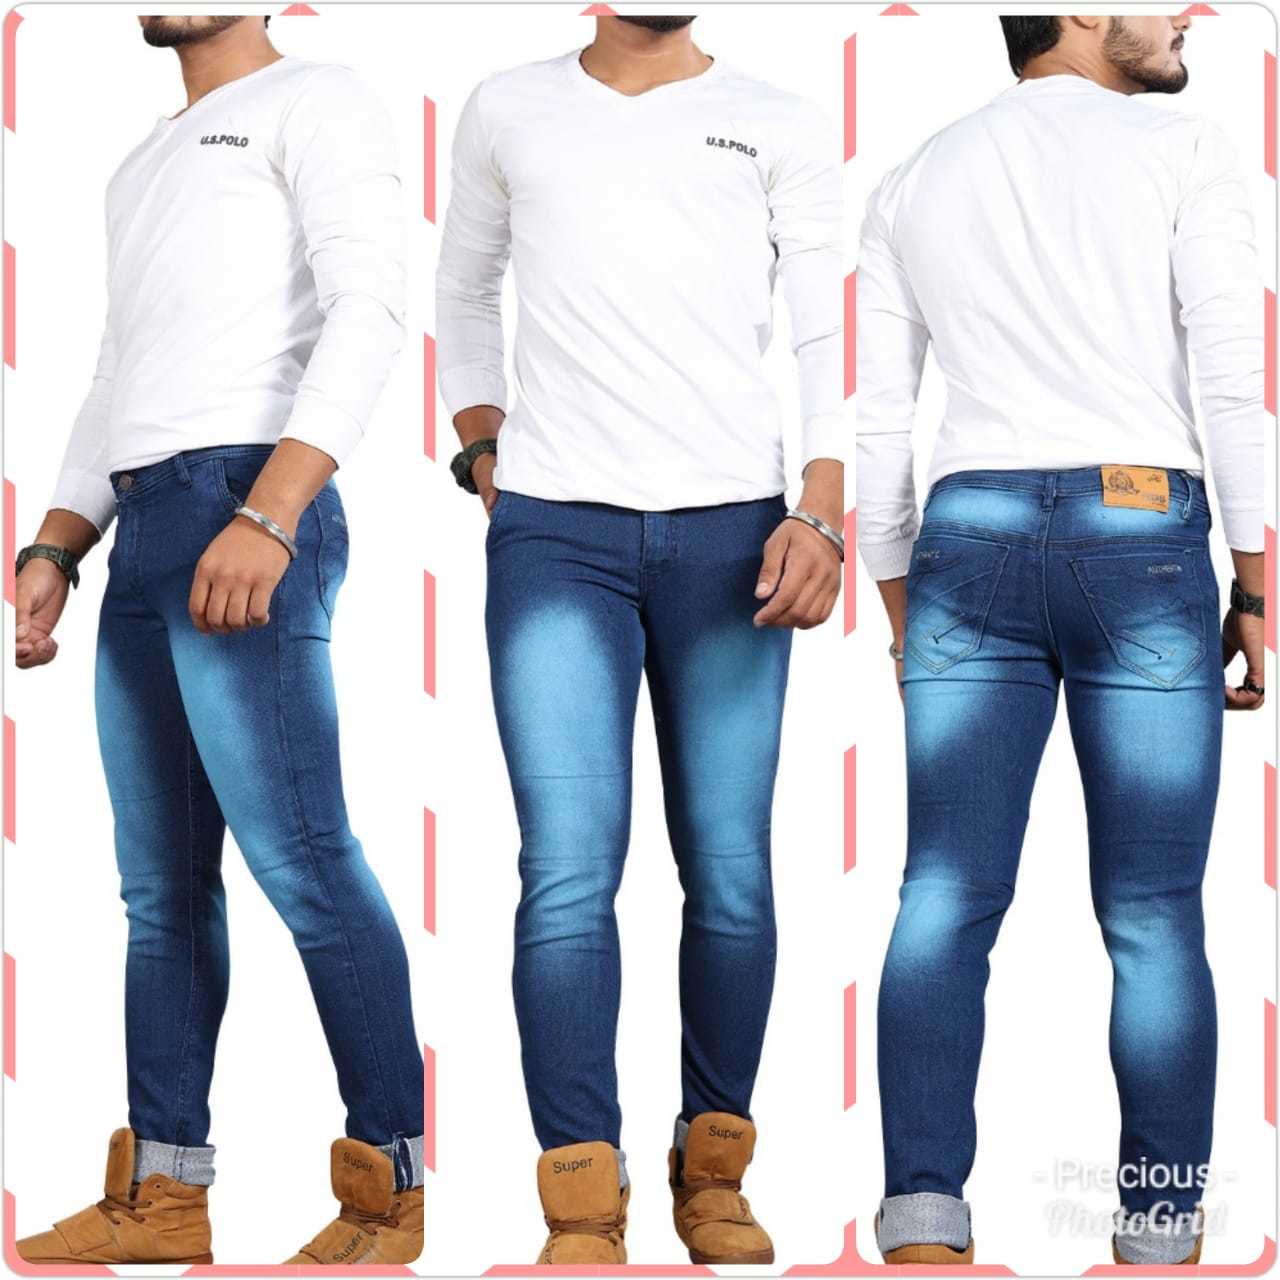 Mens Designer Jeans